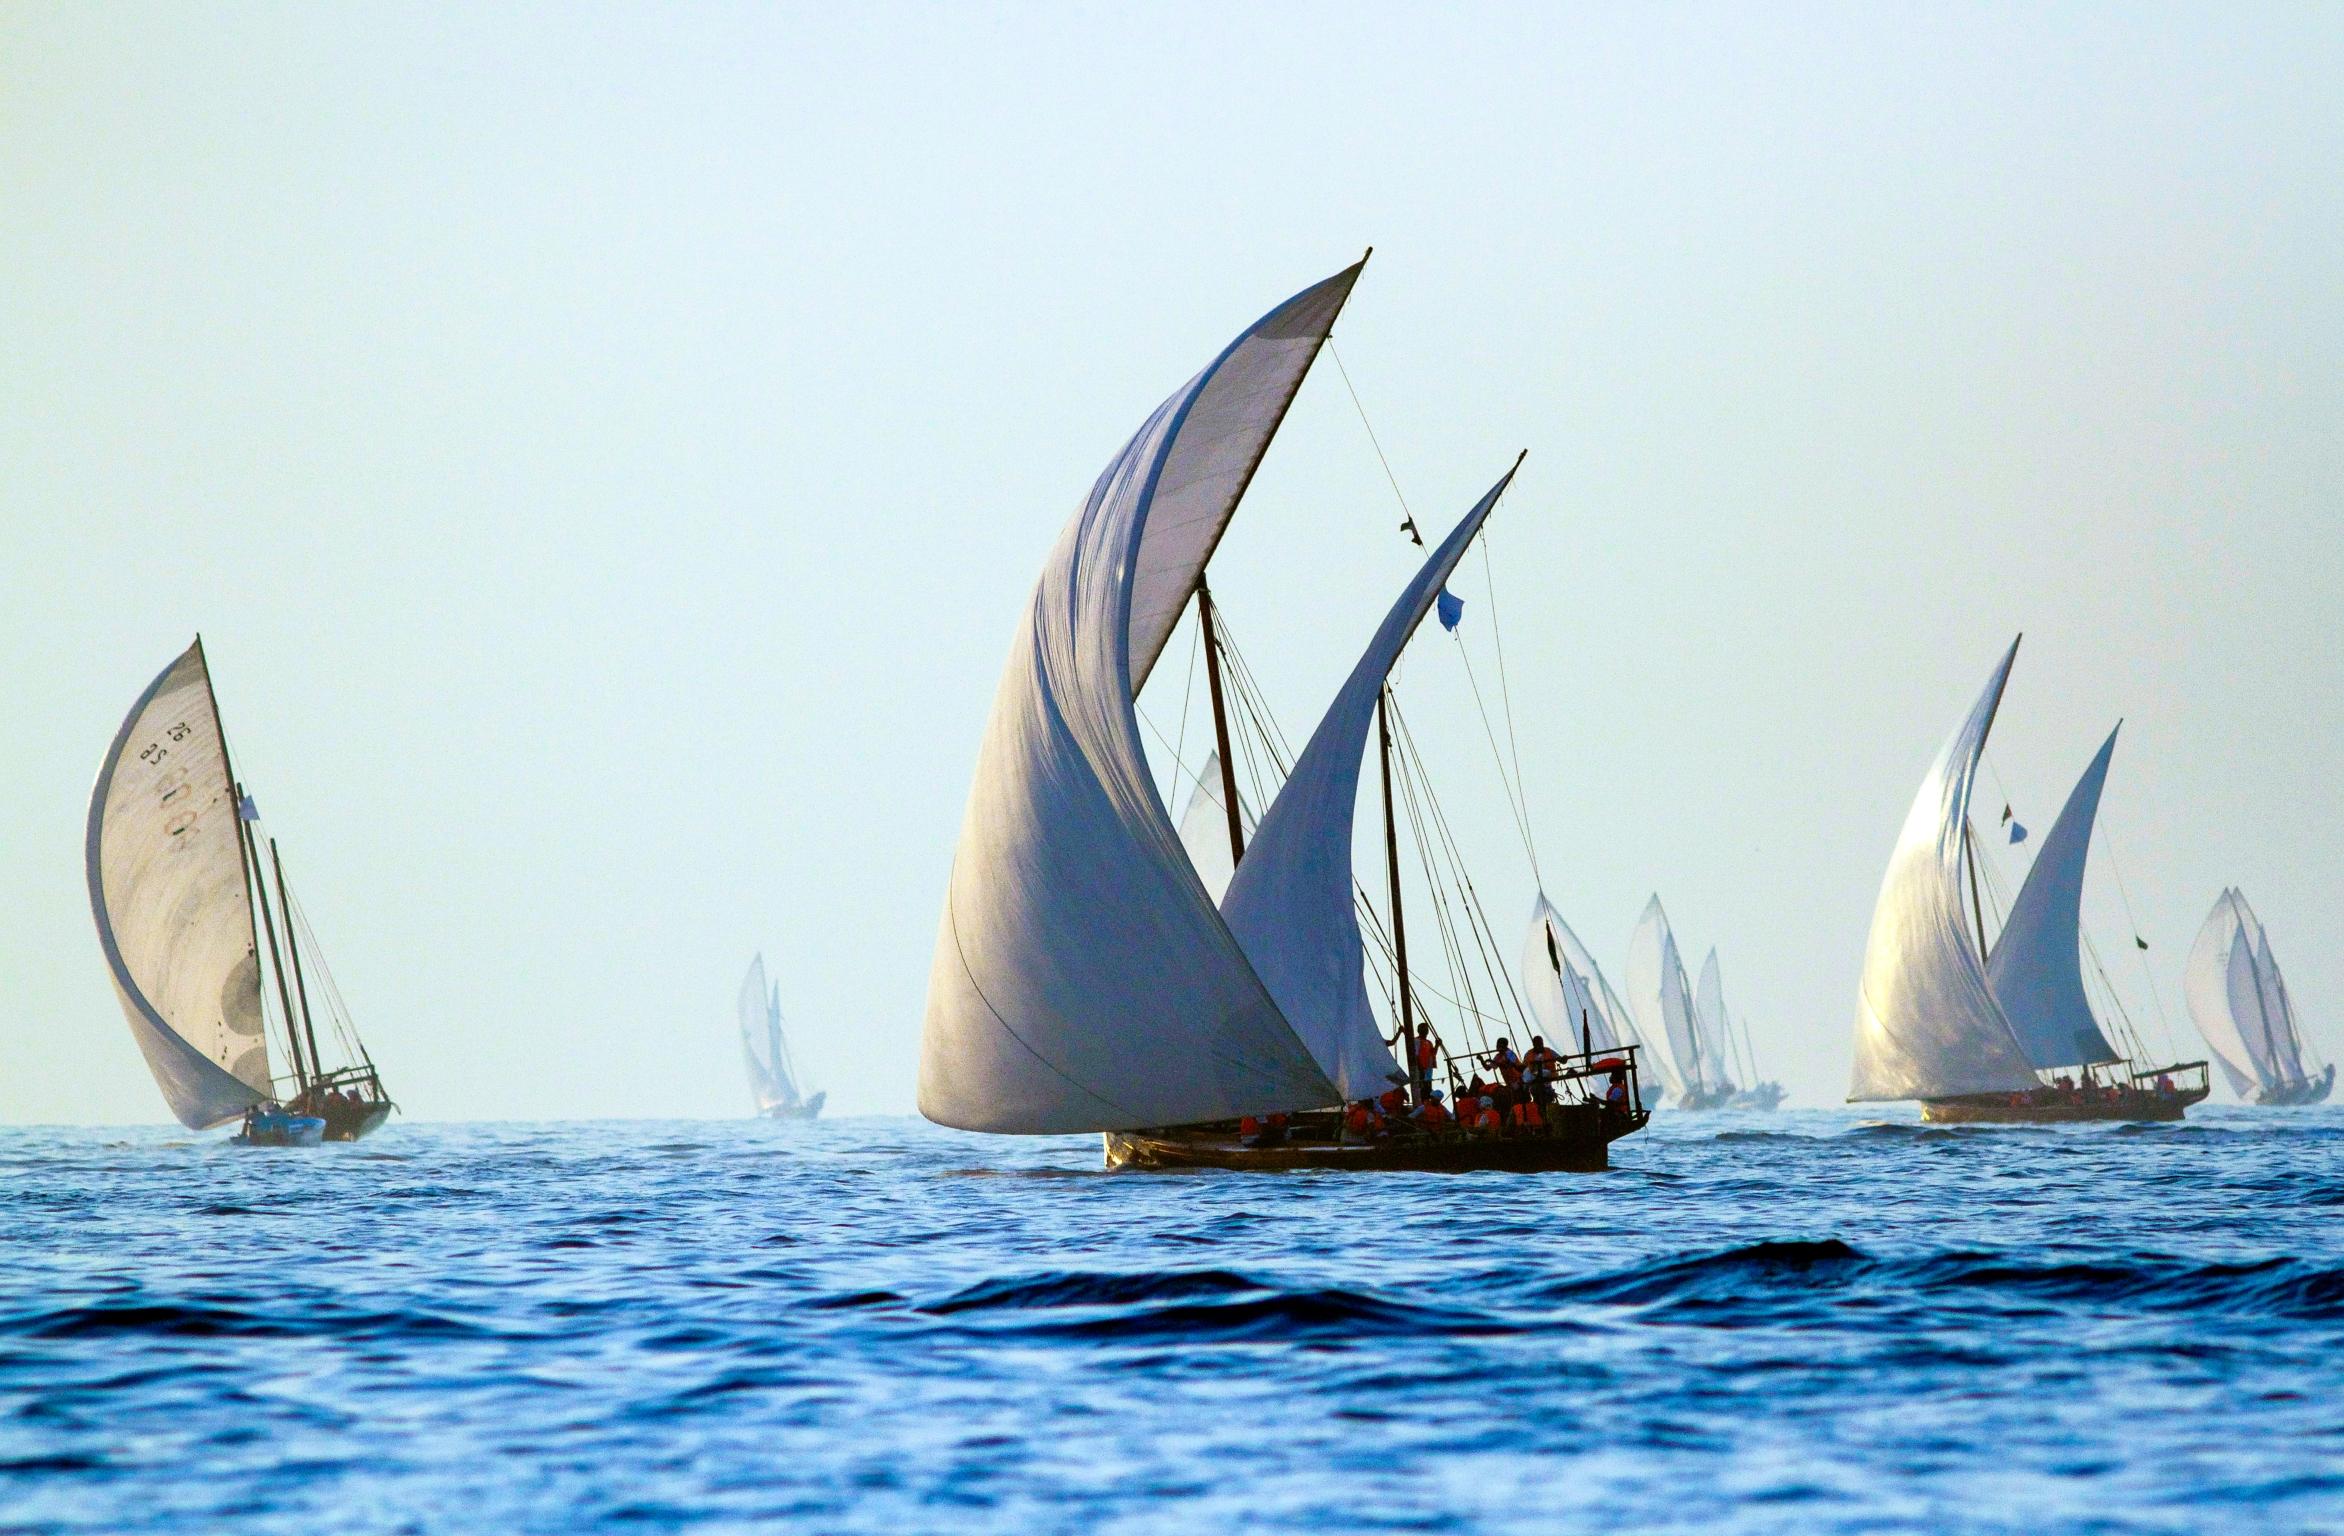 Inspiration
La famille de meubles Dhow fait référence aux voiles gonflées des bateaux traditionnels omanais, un élément important de l'histoire maritime de cette nation de marins.

Artisanat
Bethan a réimaginé le mouvement des voiles dans un